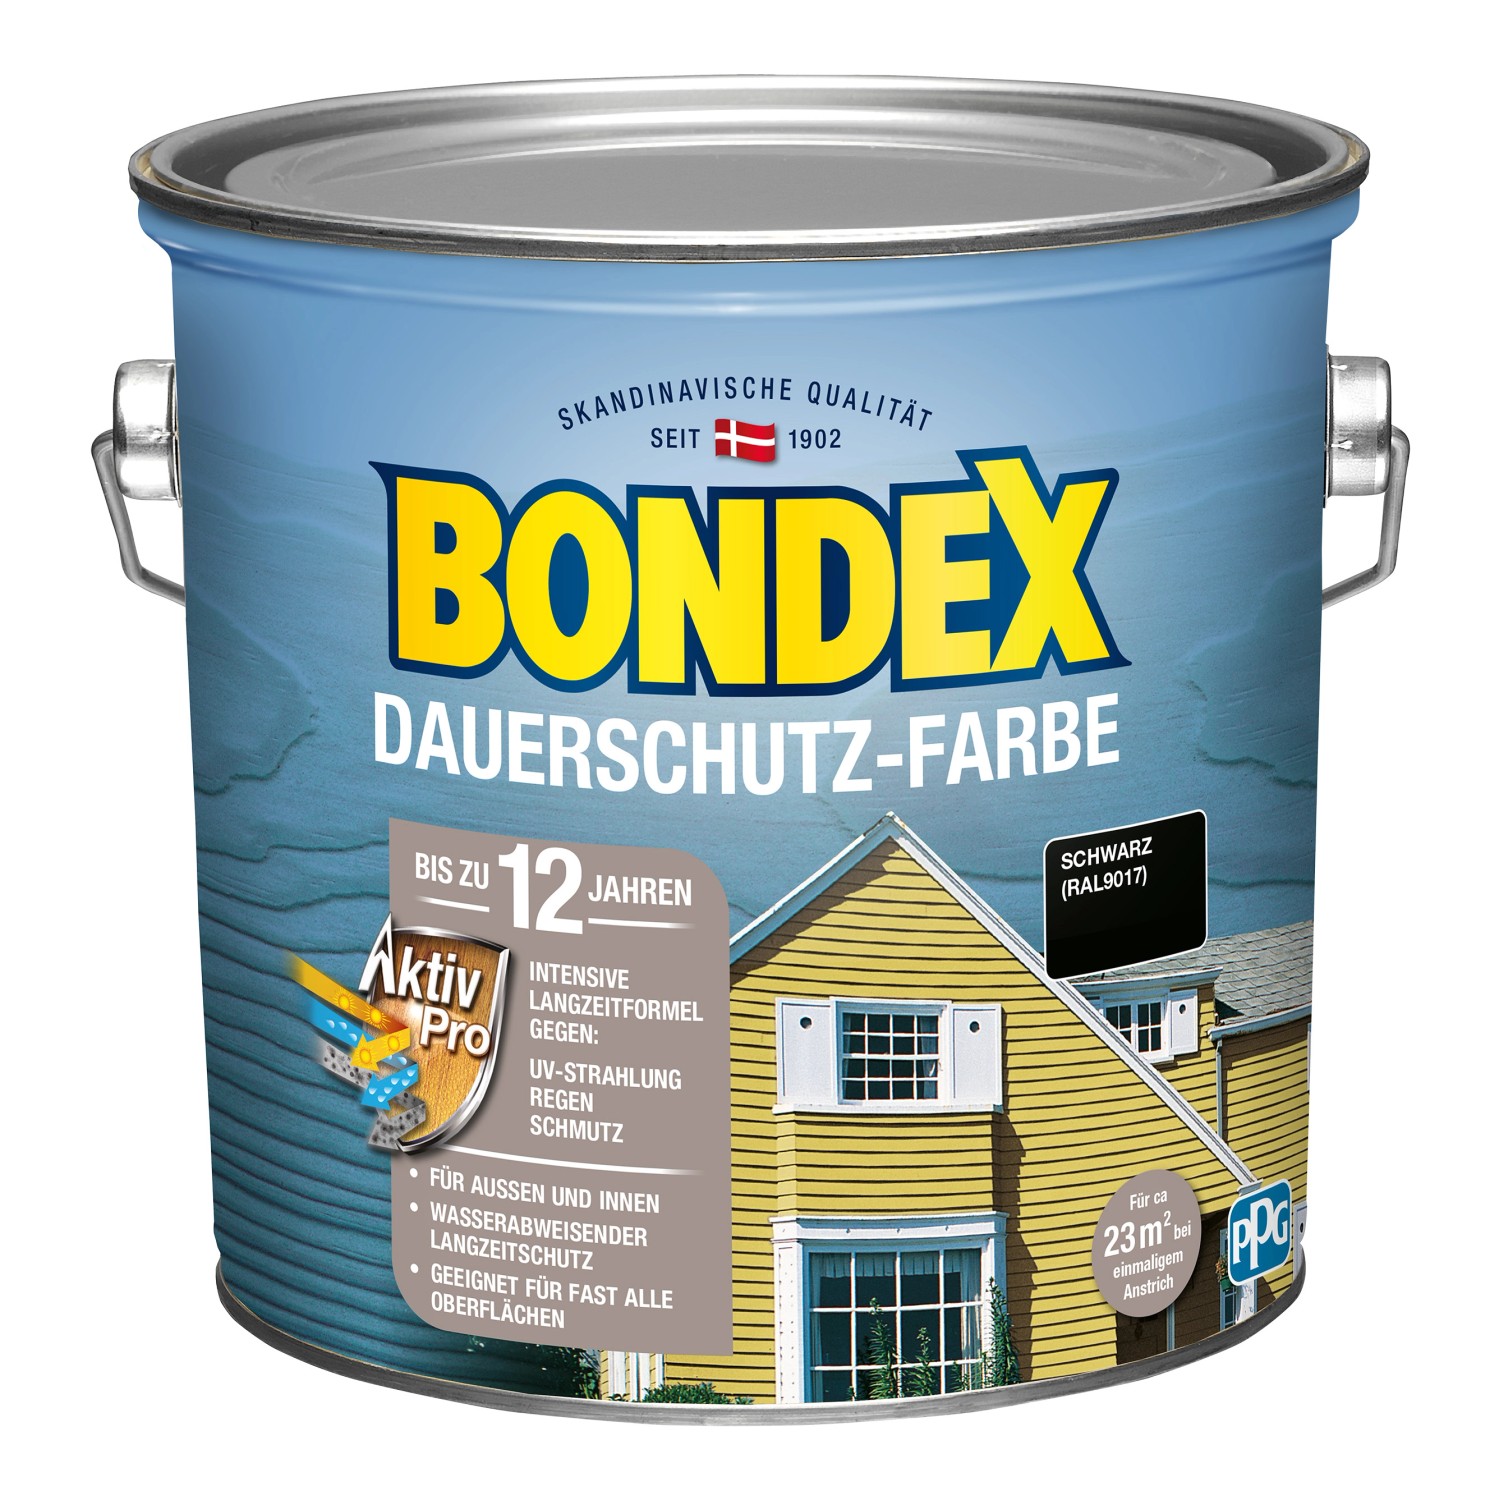 Bondex Dauerschutz-Farbe Schwarz (RAL 9017) seidenglänzend 2,5 l